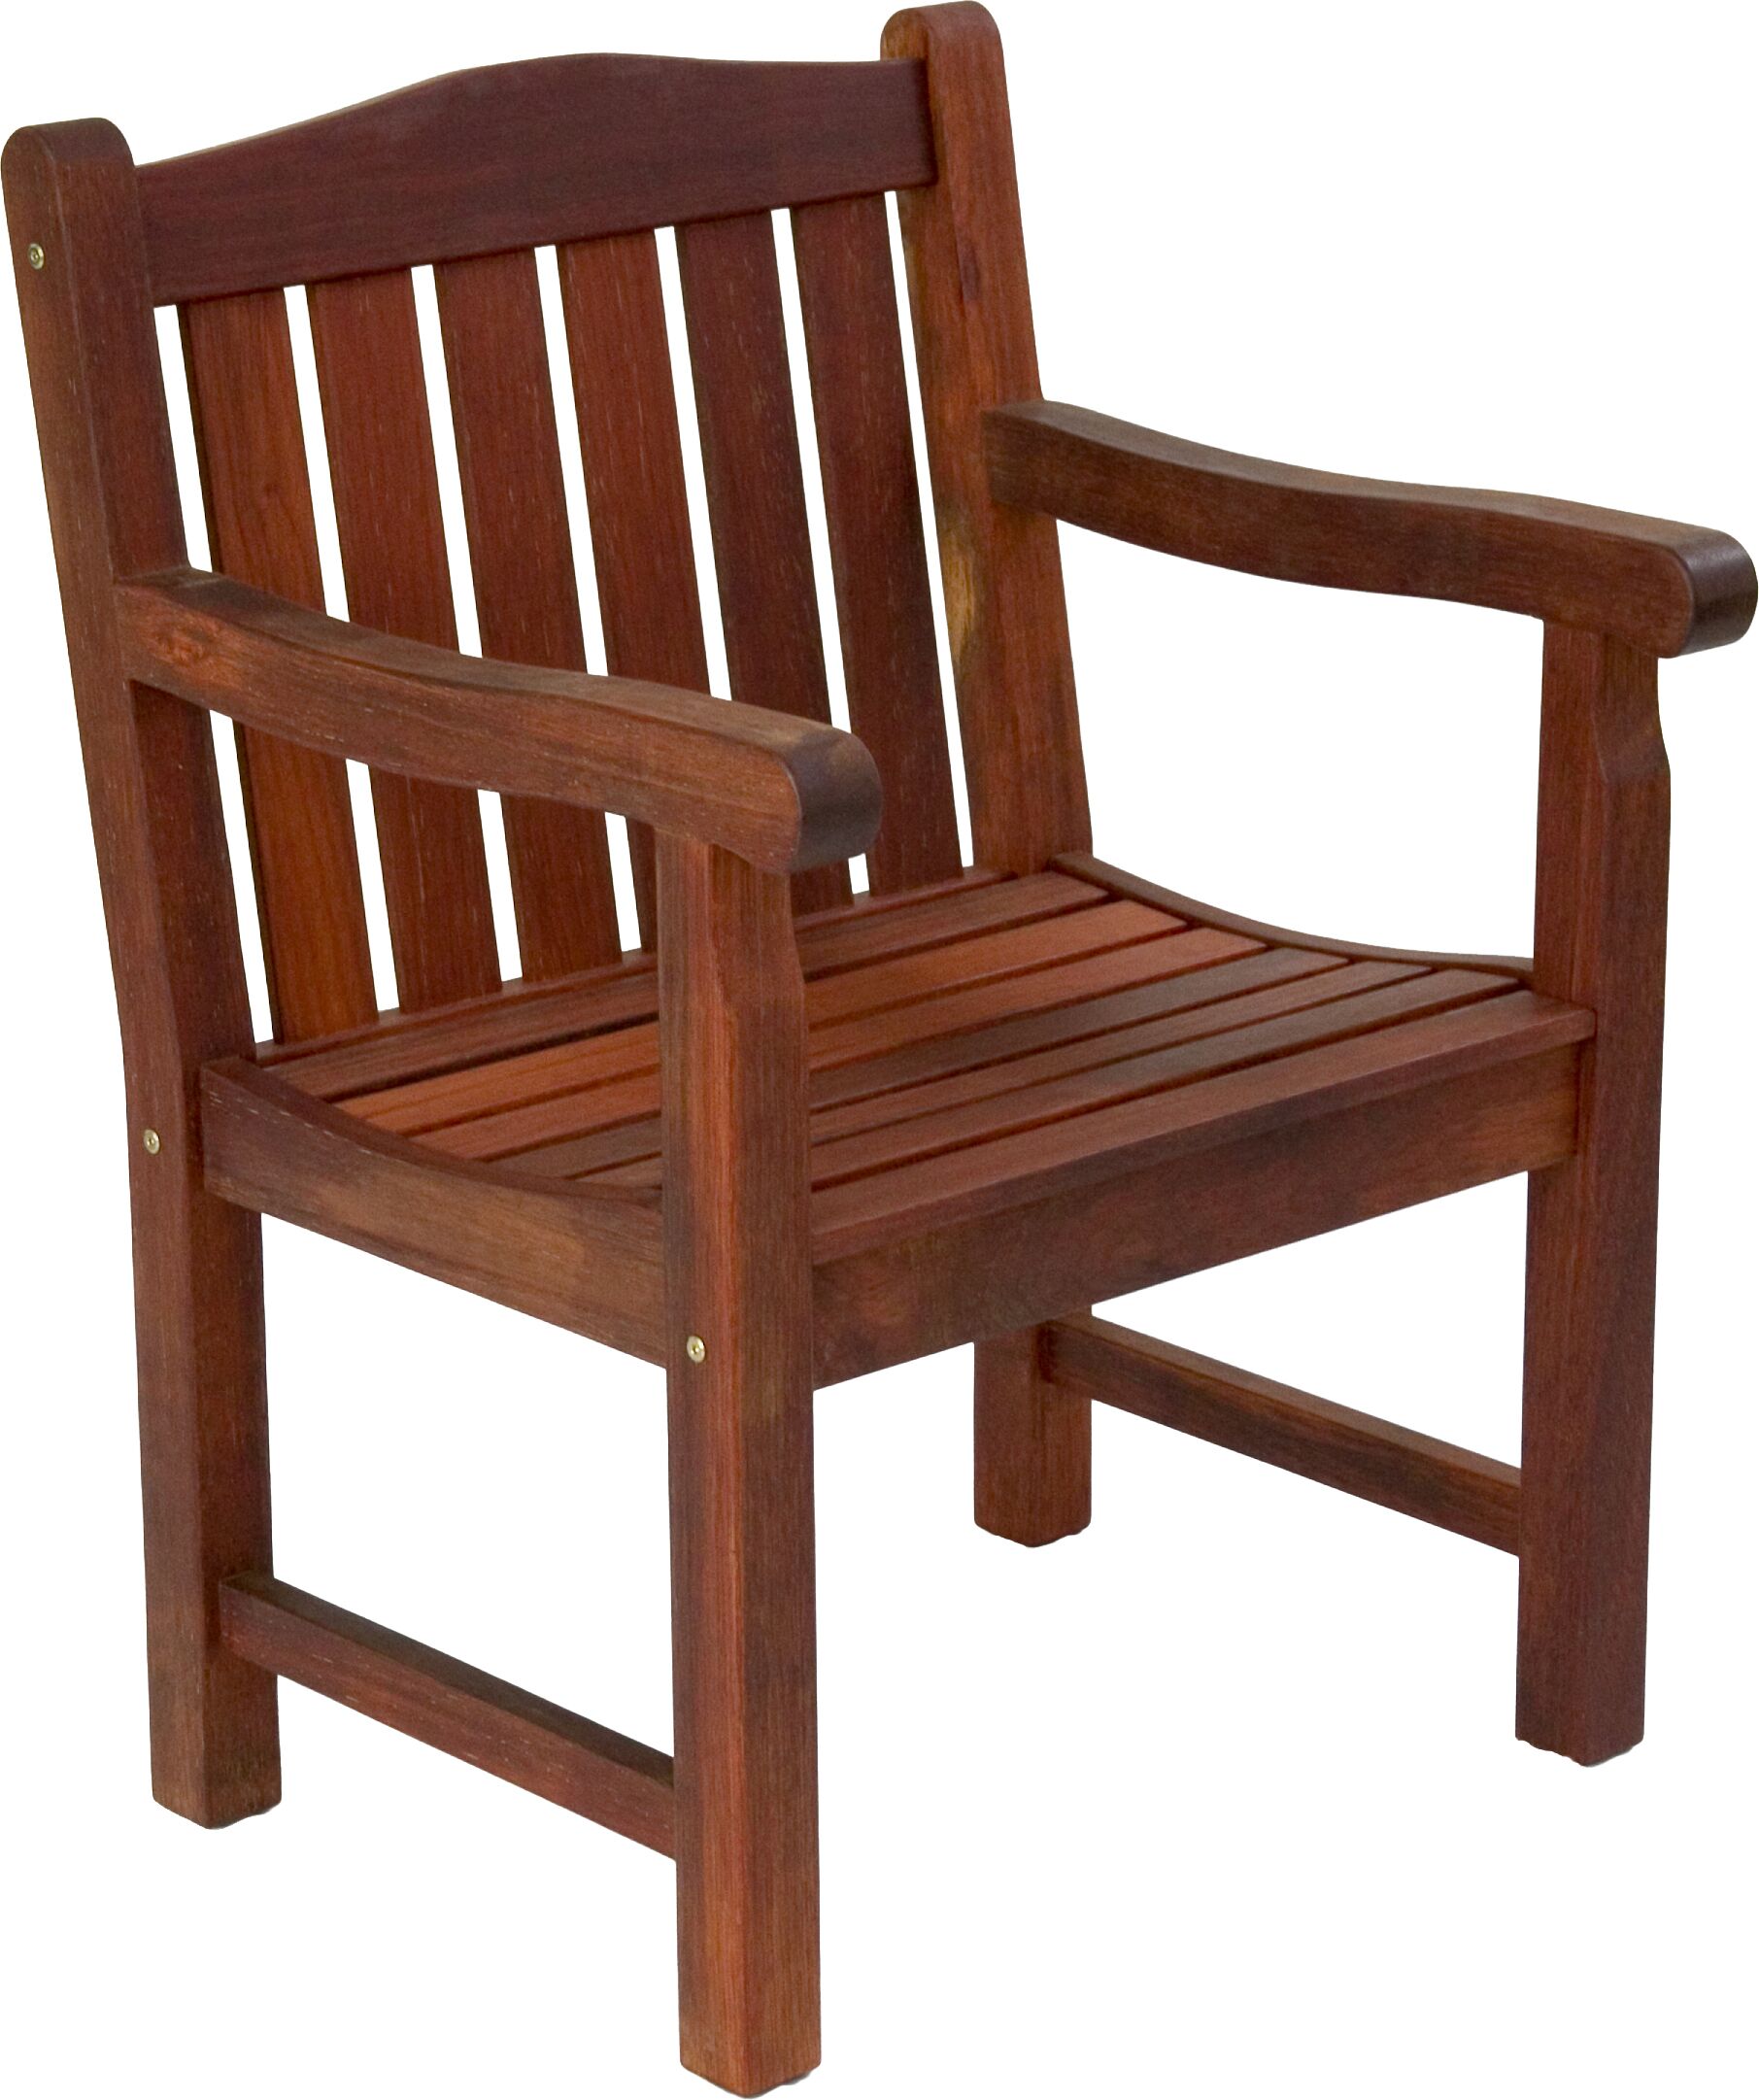 Kwila Garden Chair – Outdoor Living Commercial